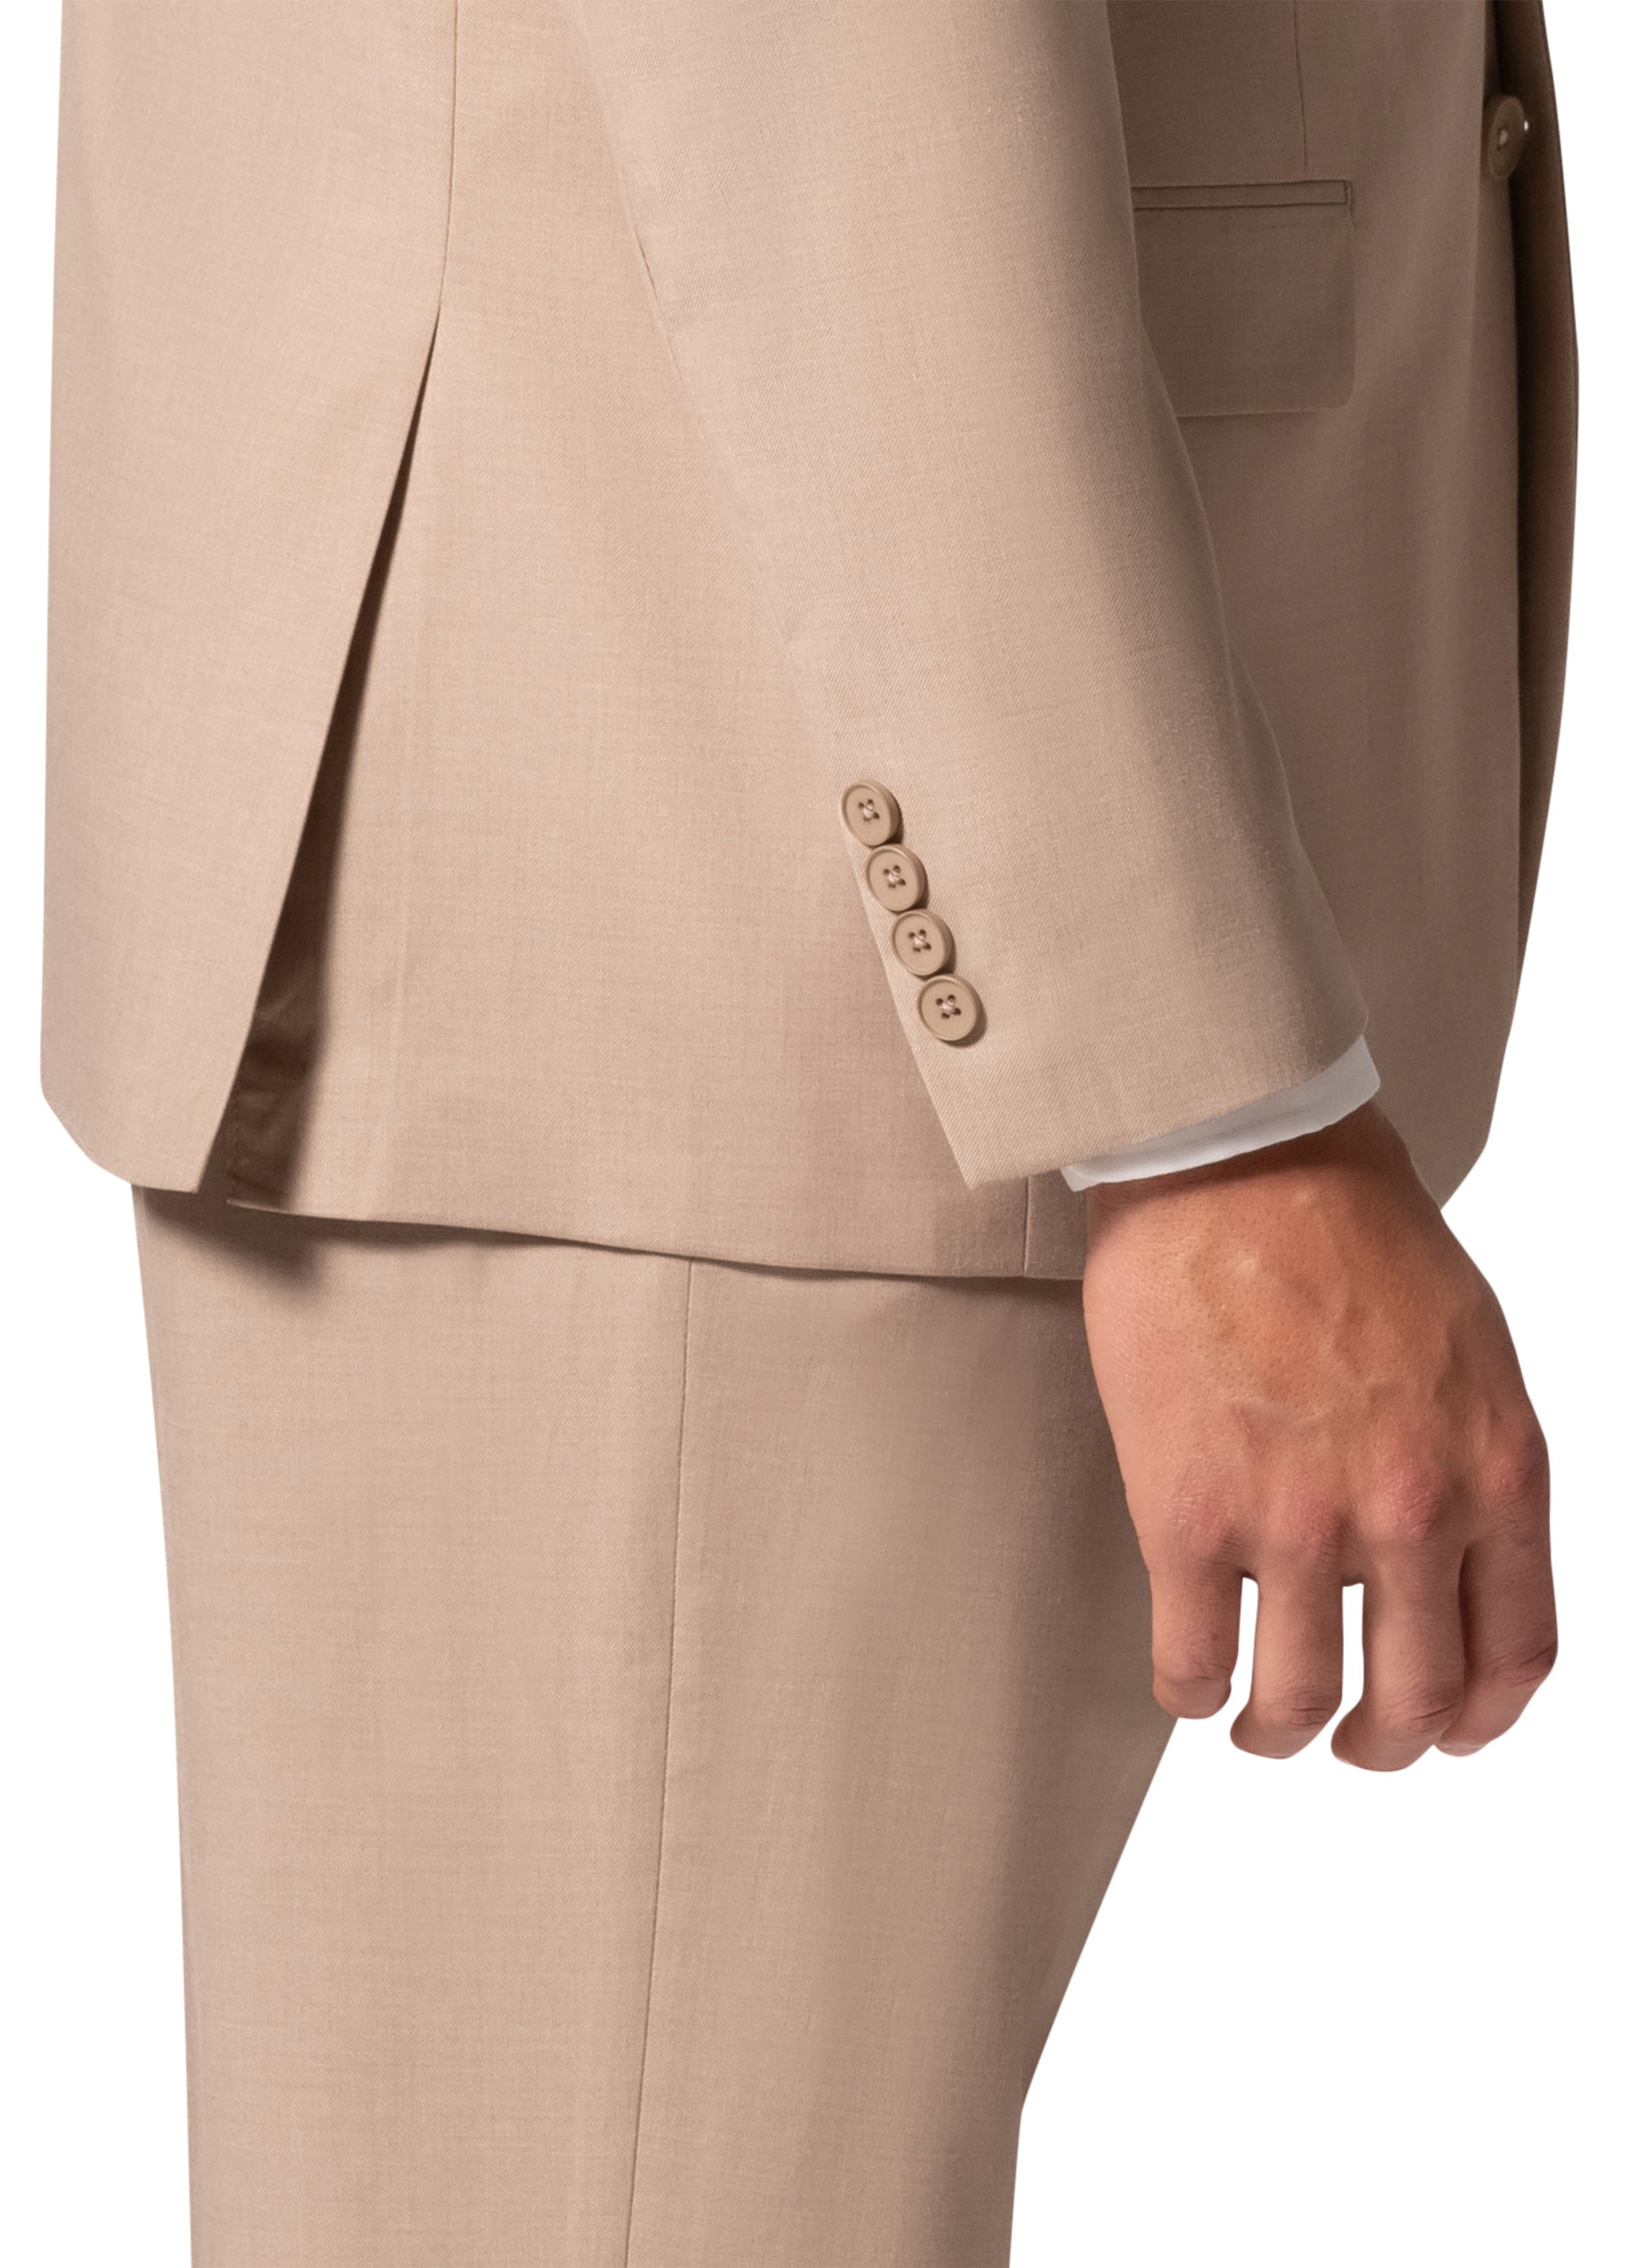 Berragamo MARCO UNI 3PC Notch Slim Suit - Tan